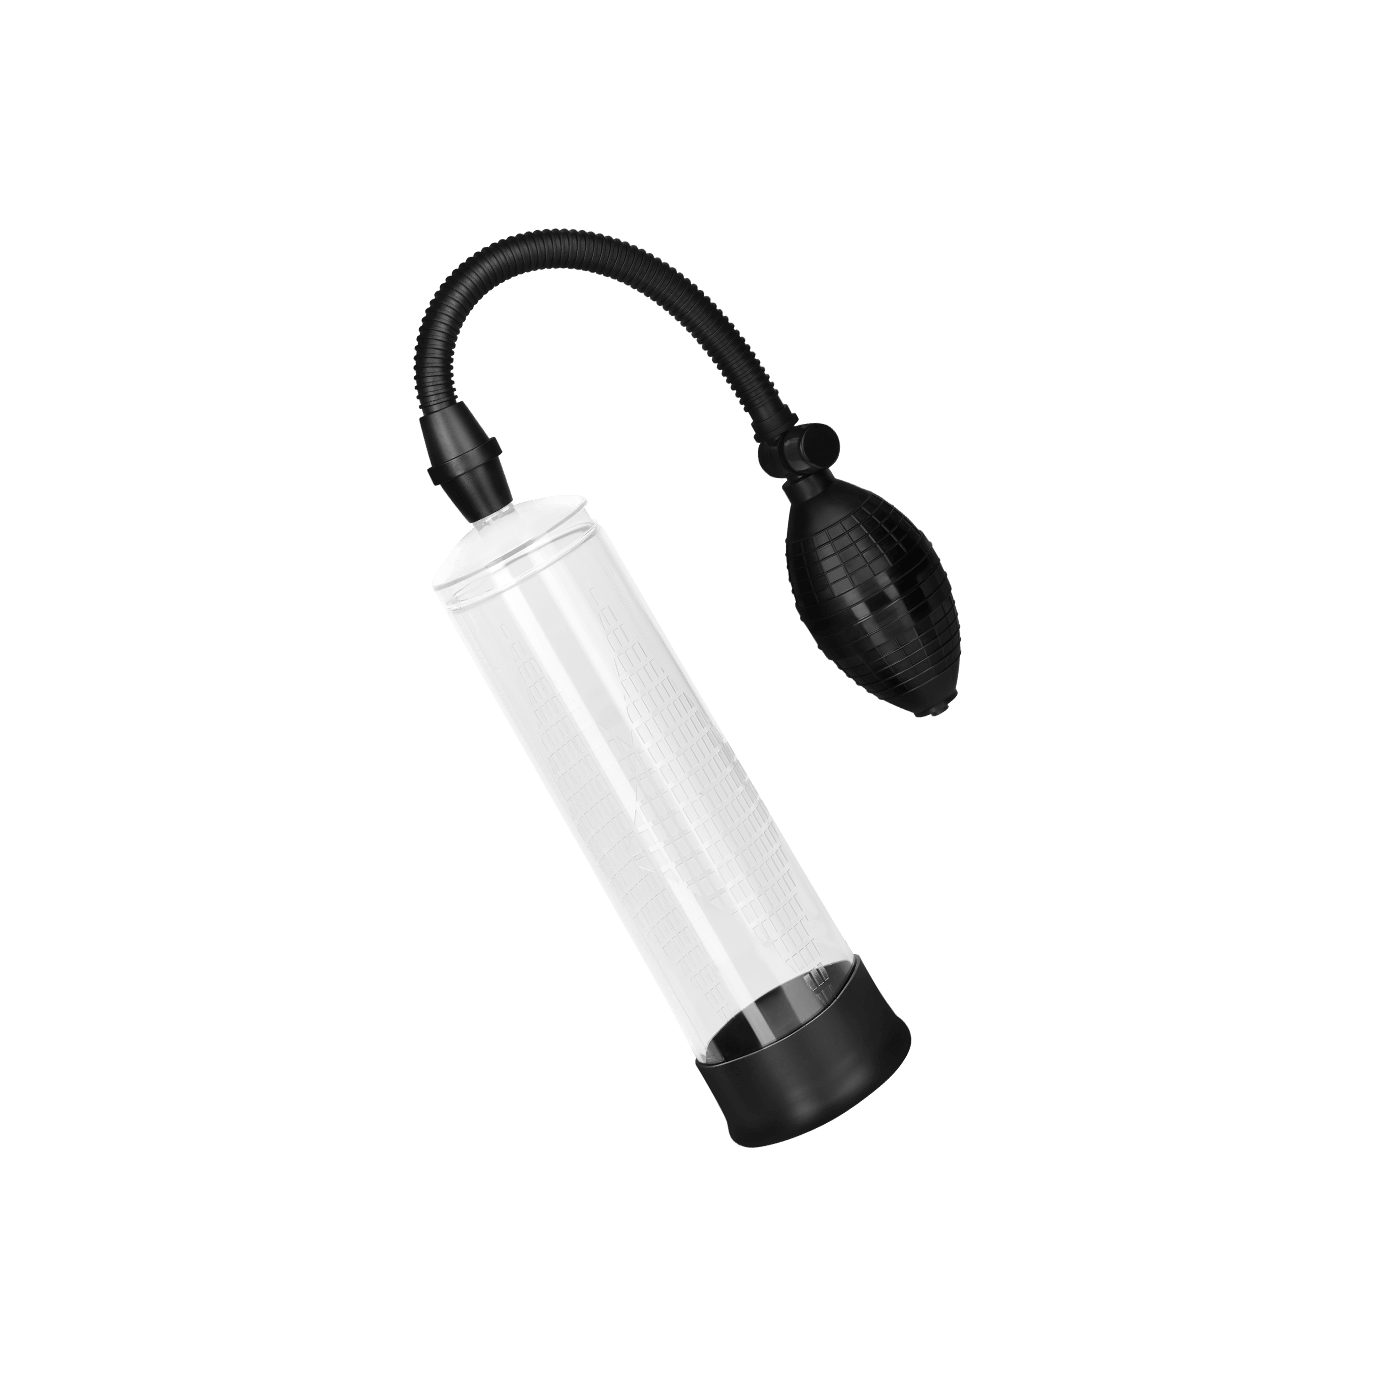 EIS Eichel-Masturbator EIS Elektrische Penispumpe mit Silikon-Manschette, Handpumpe, 24cm, prallere Erektion; praktische Handpumpe transparent | Eichel-Vibratoren